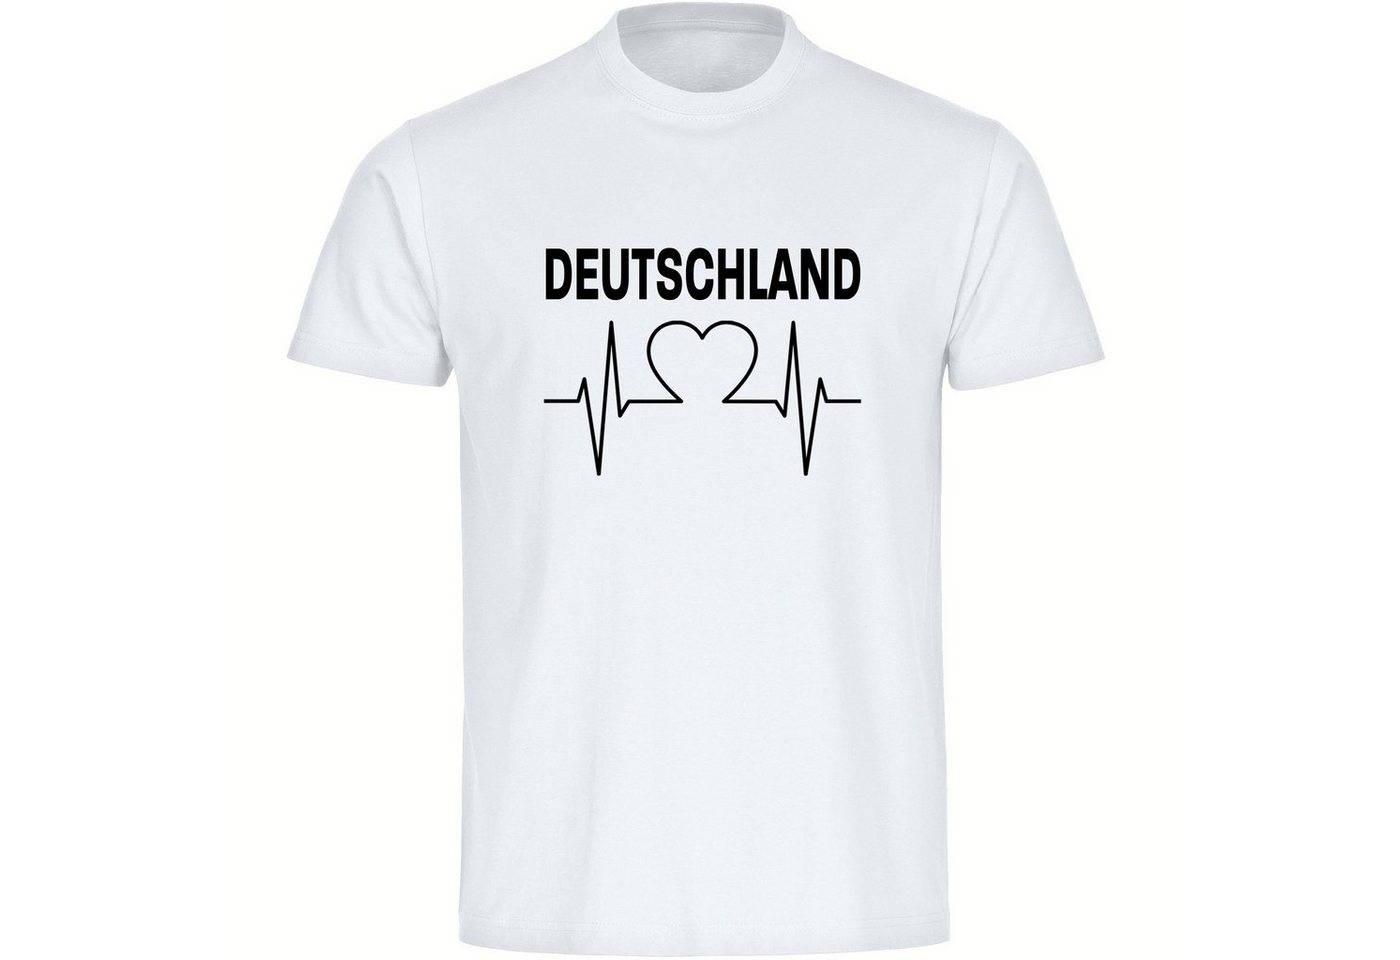 multifanshop T-Shirt Kinder Deutschland - Herzschlag - Boy Girl von multifanshop